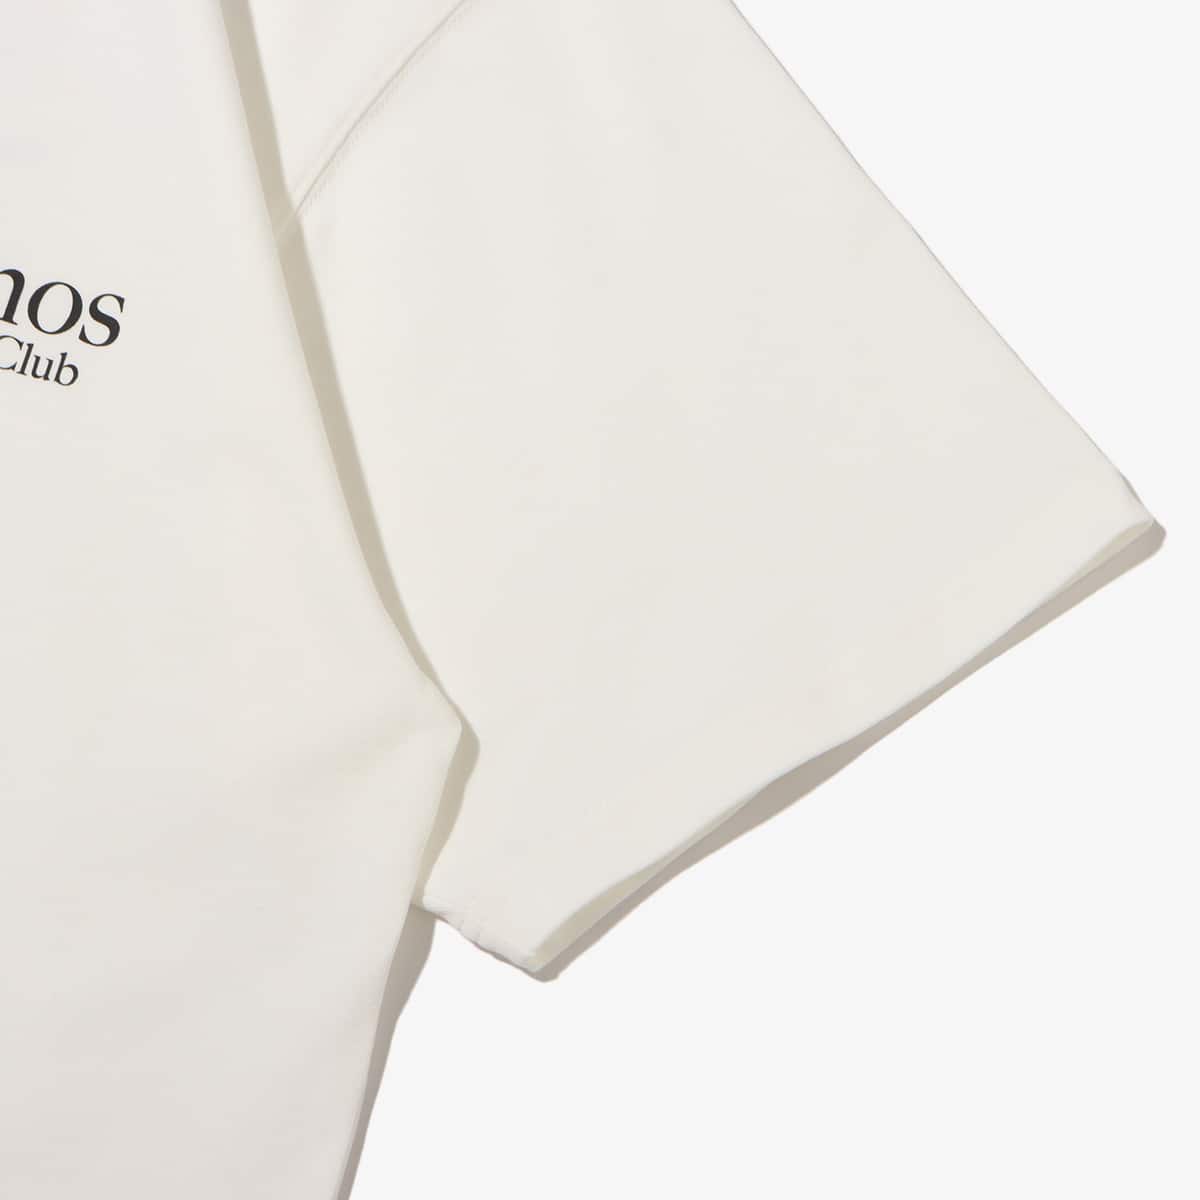 atmos Anglers Club T-shirts WHITE 23SU-I